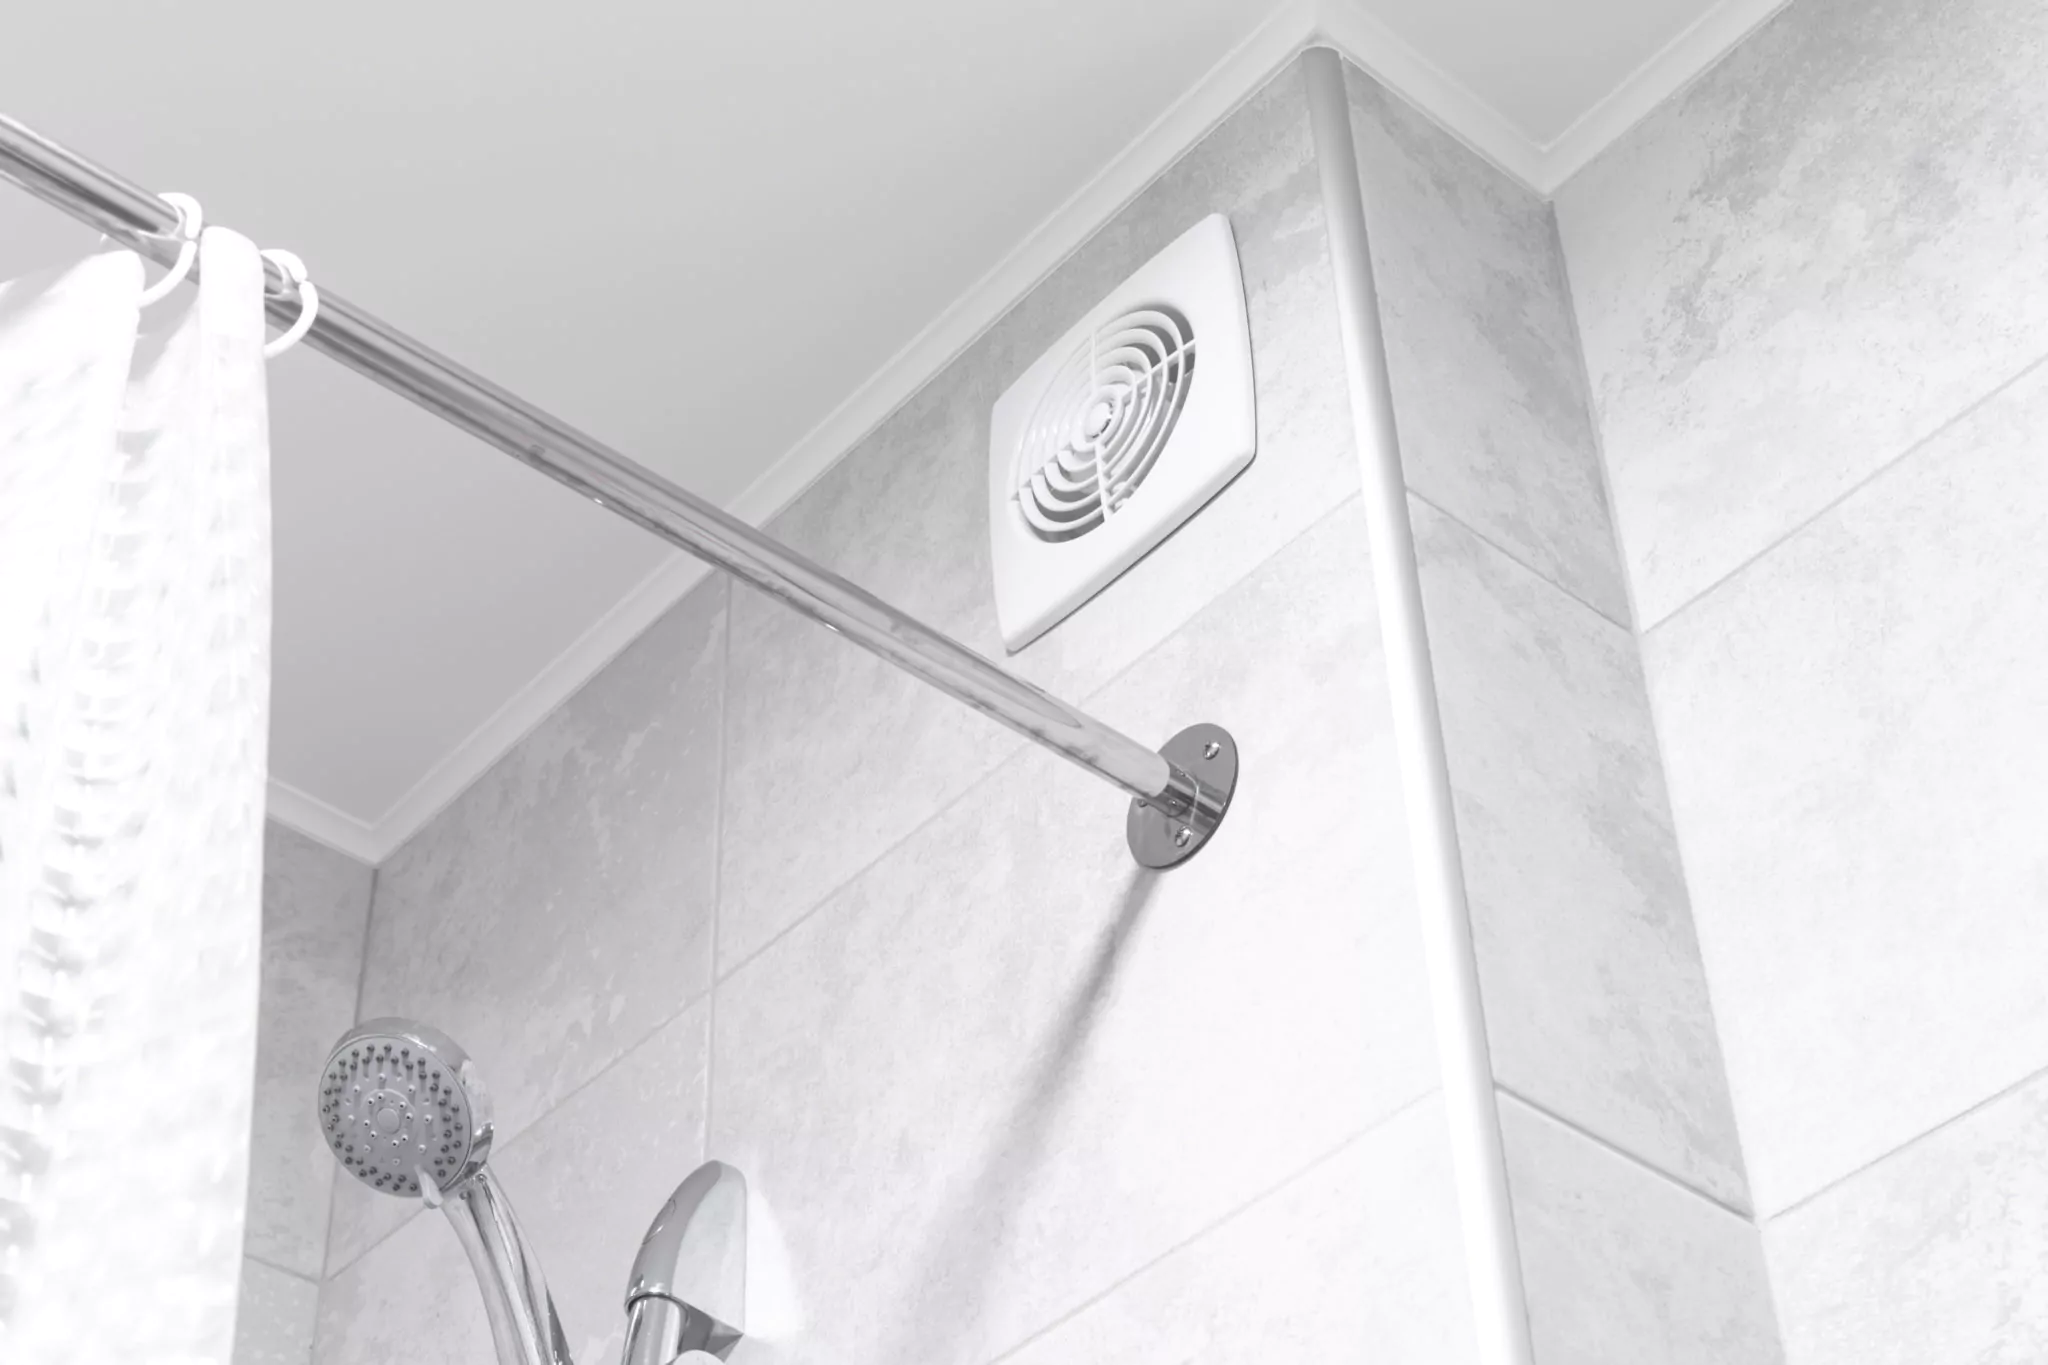 Bathroom ventilation fan in a shower